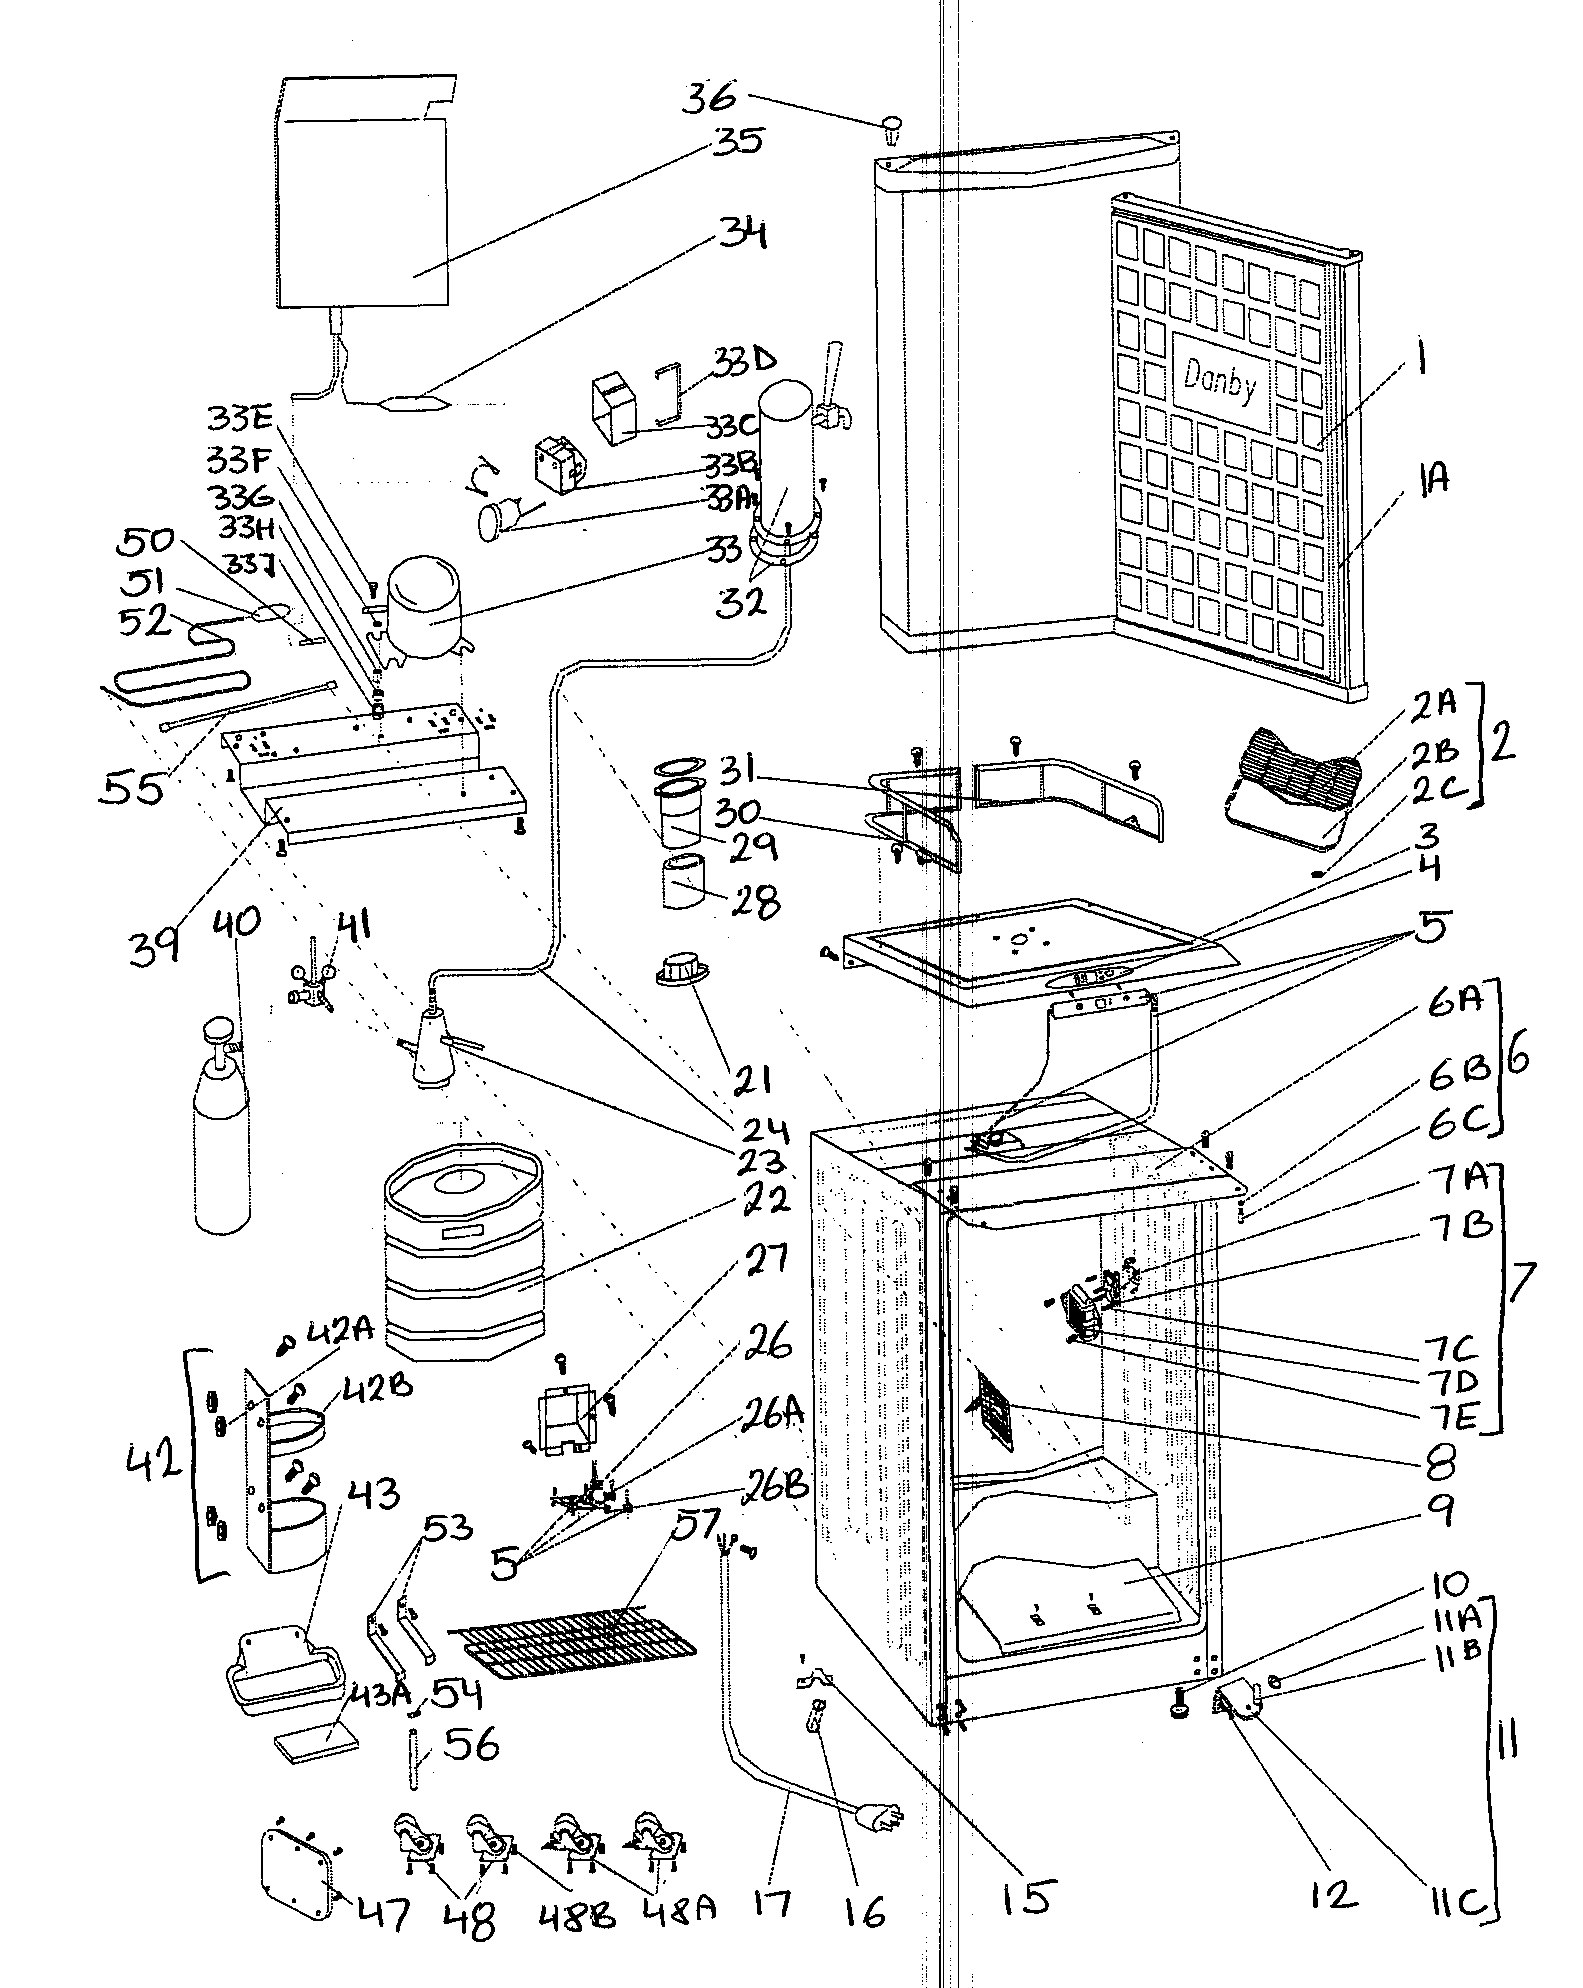 Danby Kegerator Parts Diagram - Free Wiring Diagram